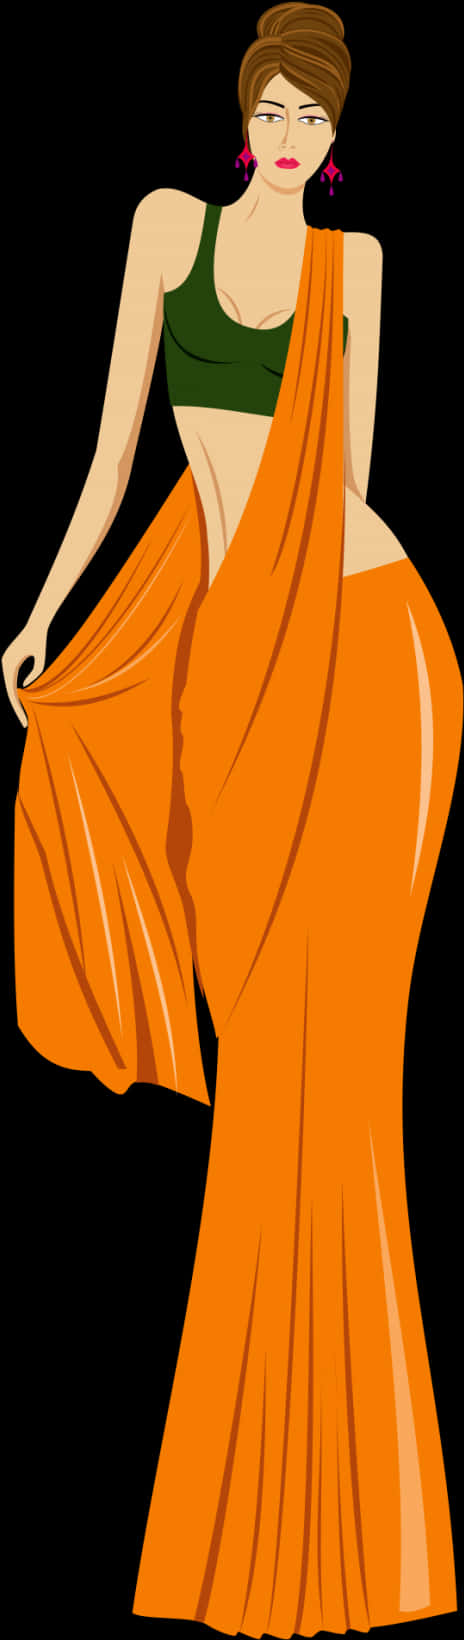 A Woman In A Long Orange Dress